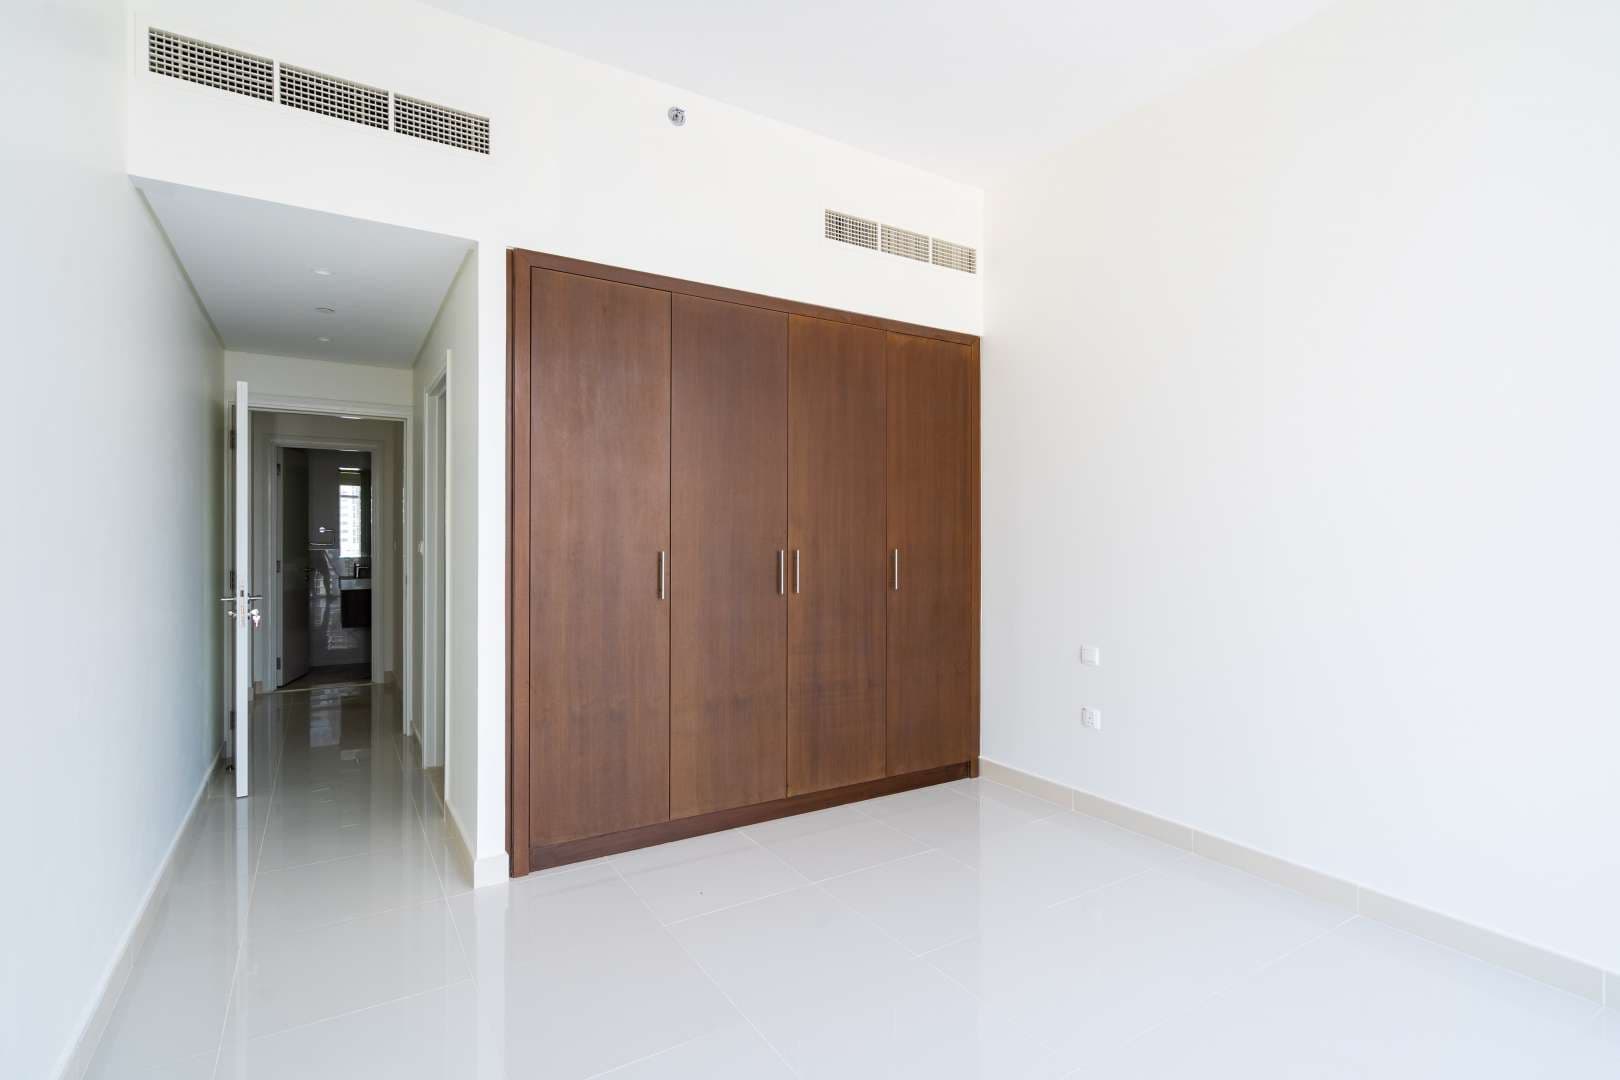 2 Bedroom Apartment For Rent Boulevard Crescent Lp05069 94dfe11c01d0380.jpg